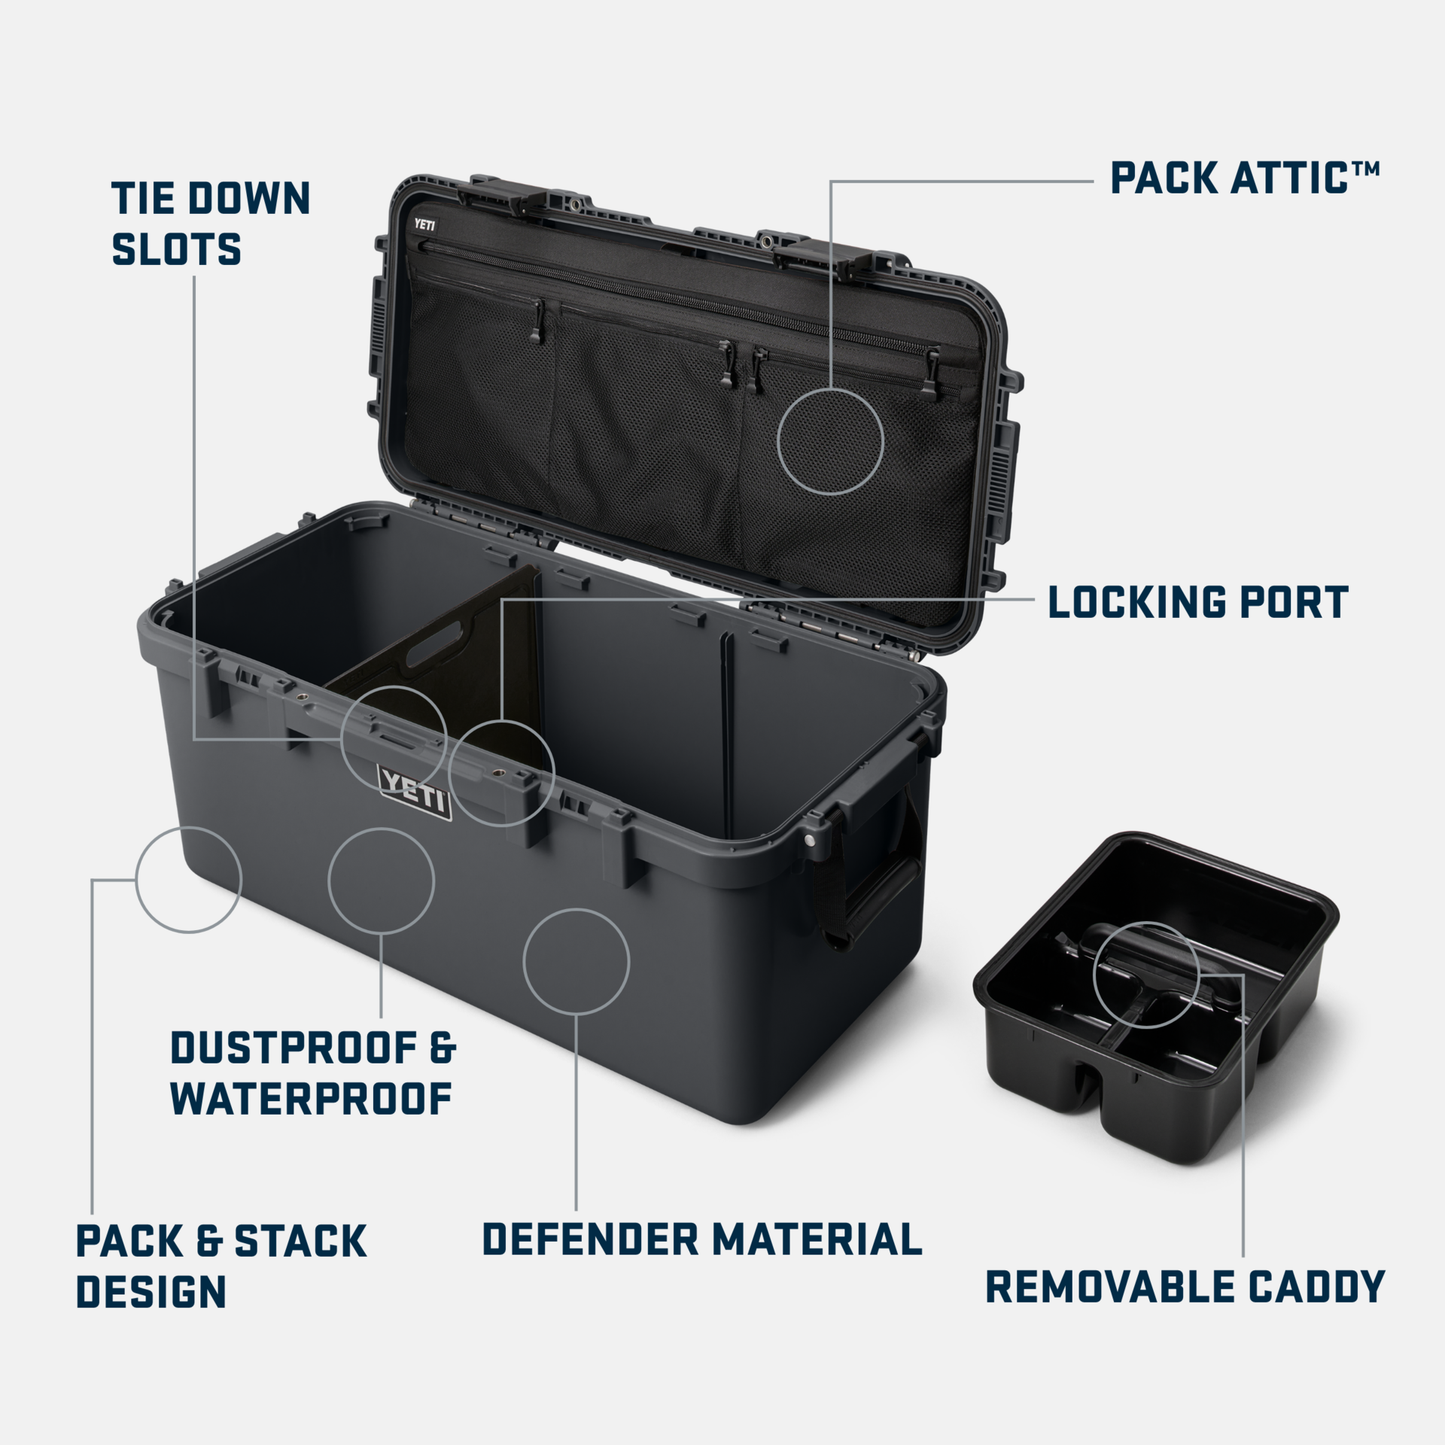 YETI LoadOut® GoBox 60 Gear Case Charcoal